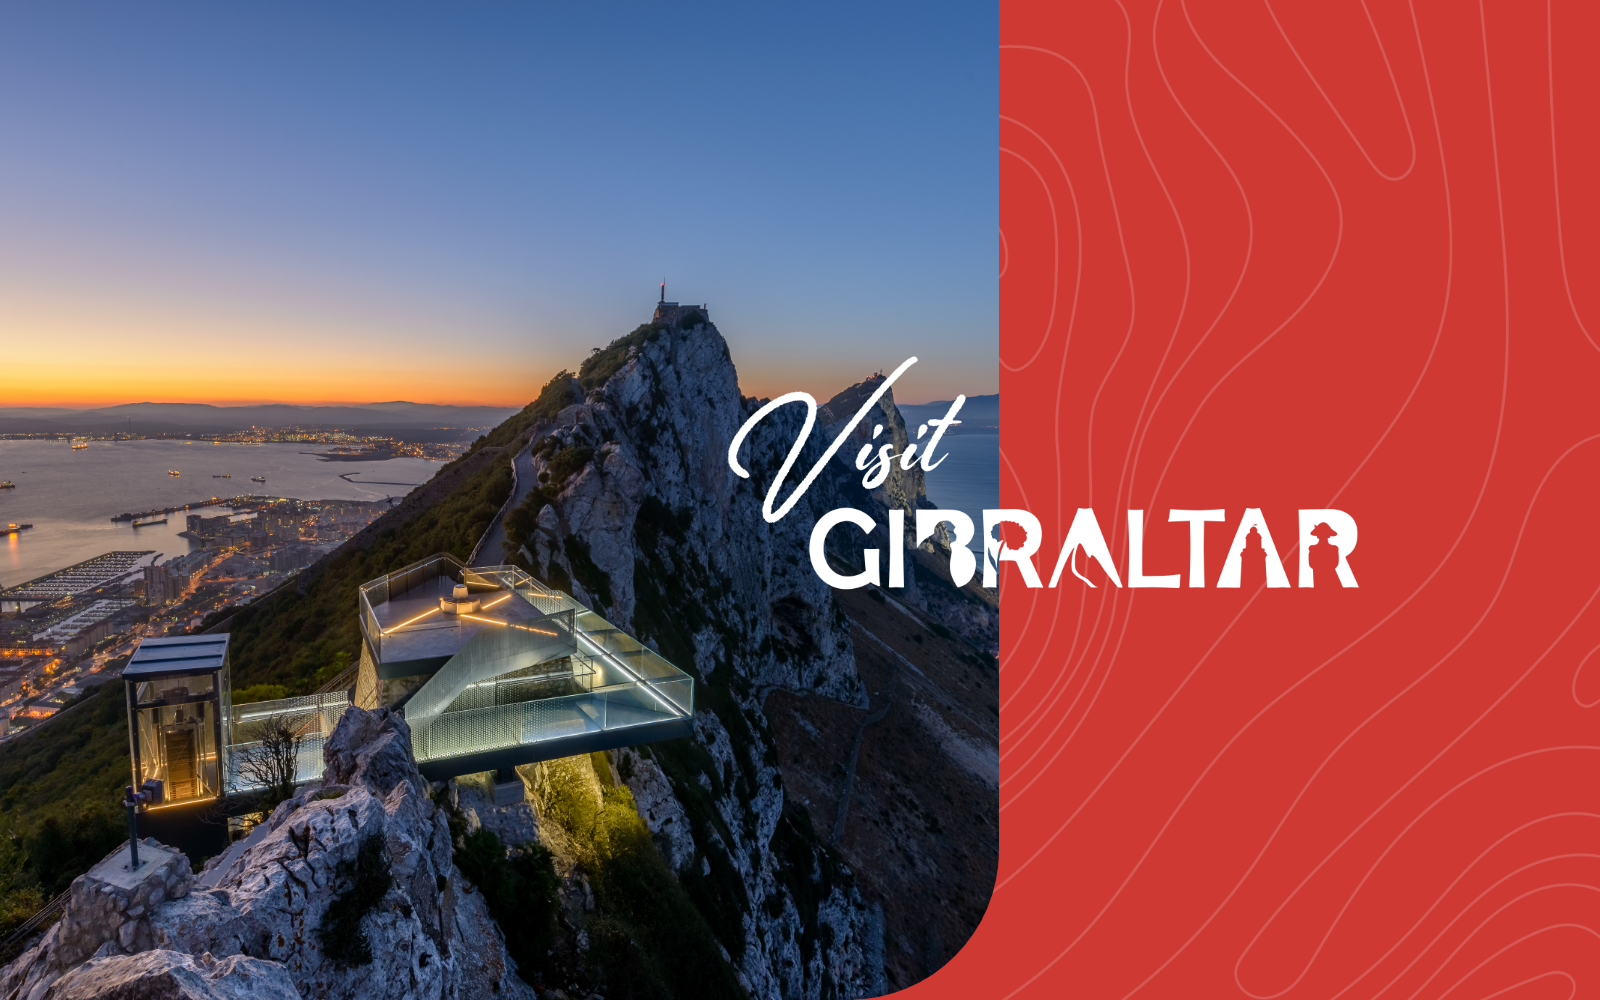 Visit Gibraltar Image